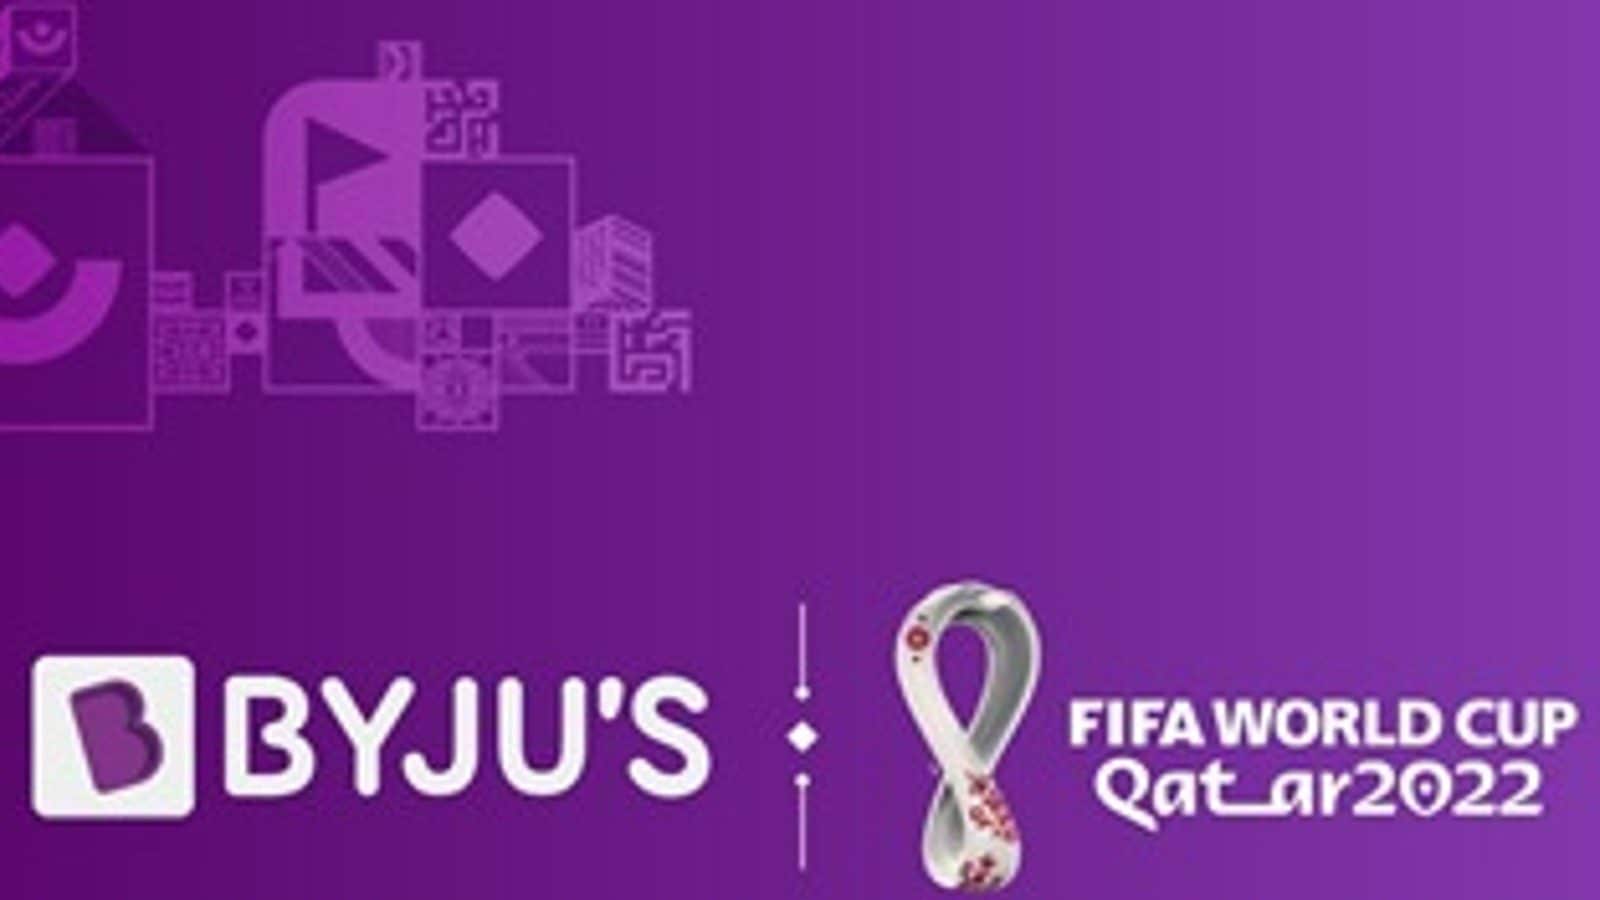 Byjus logo by Fariya Fatima on Dribbble